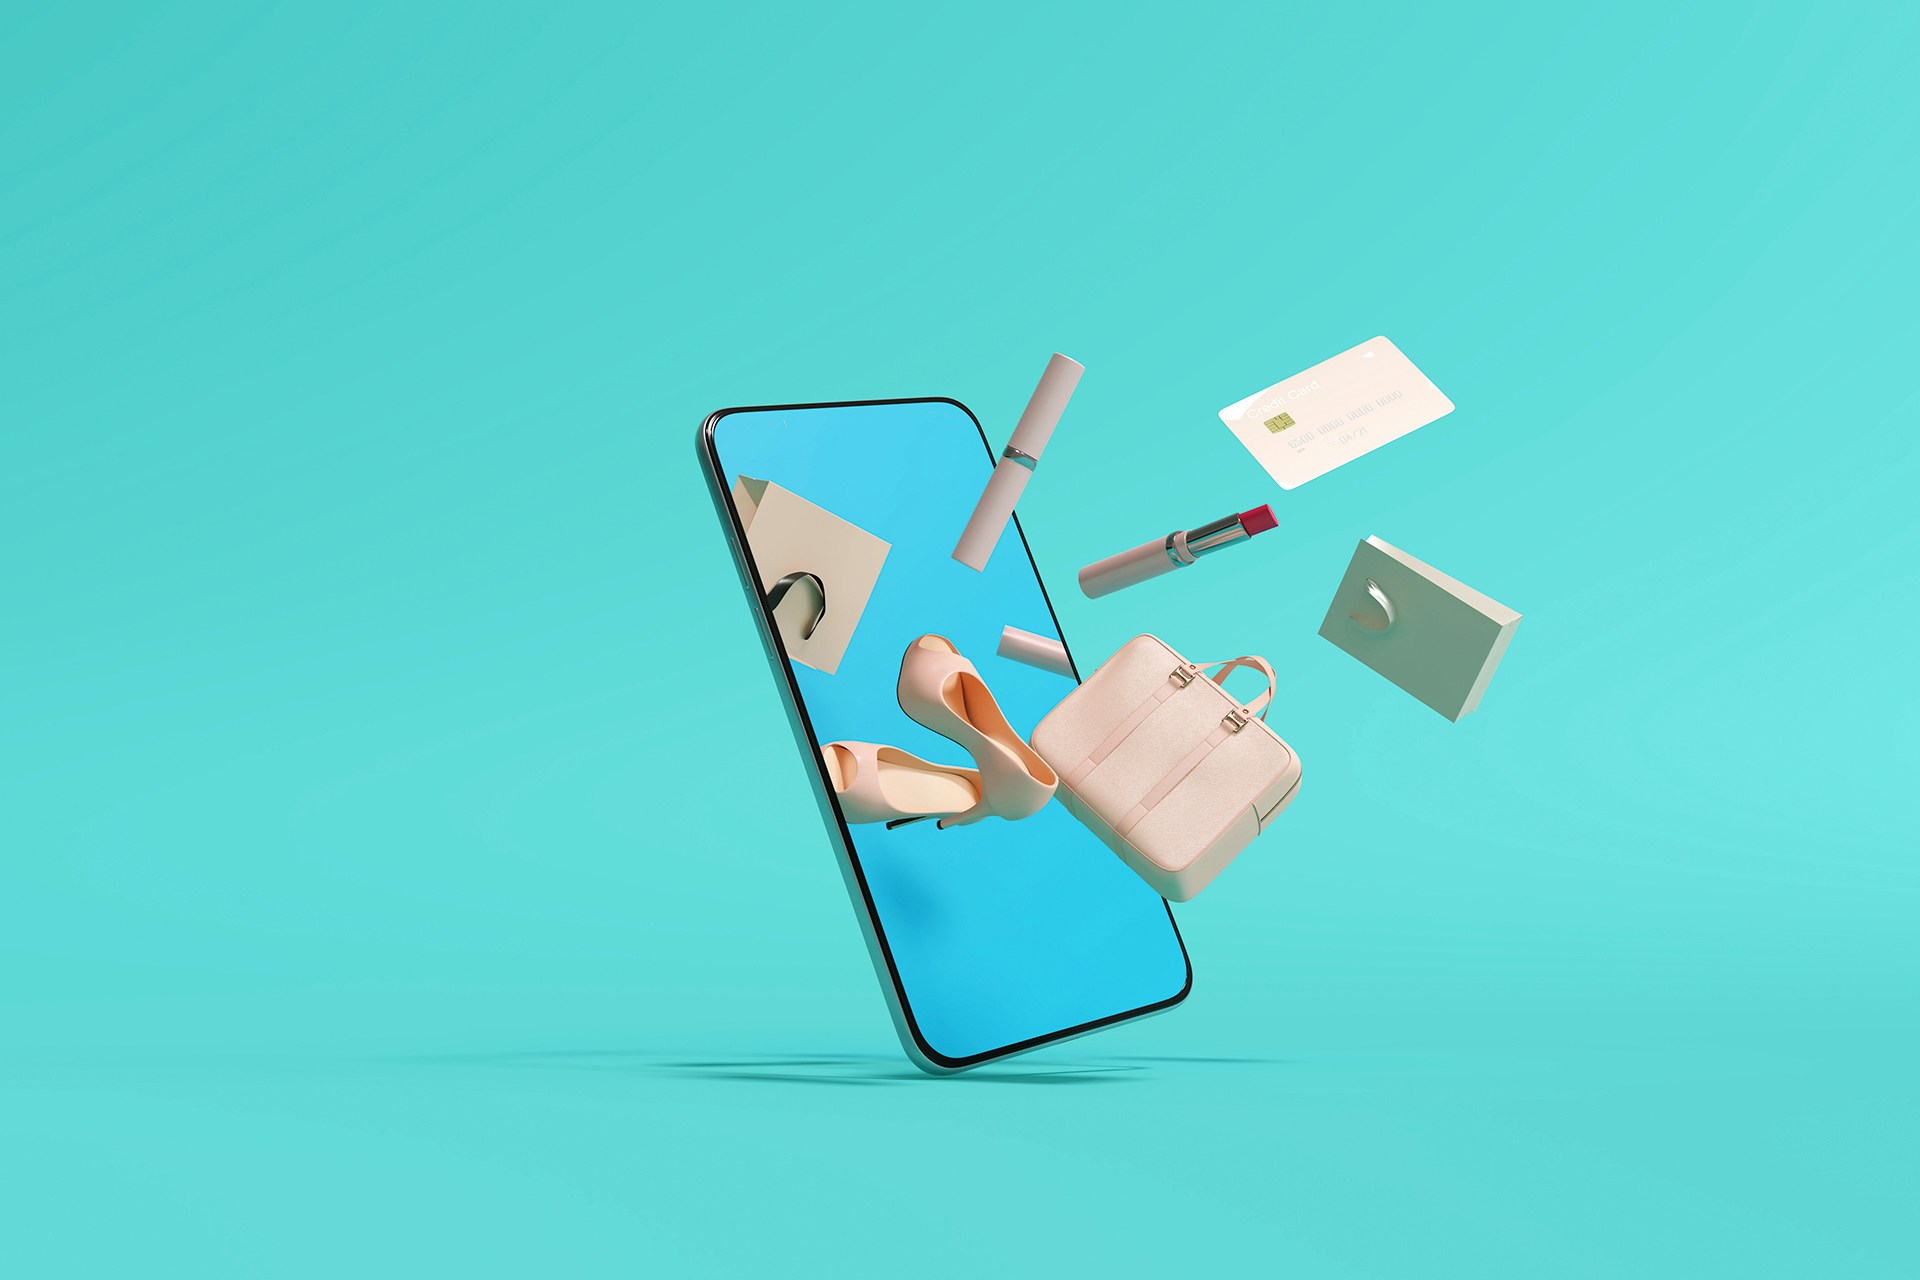 Un smartphone sur fond bleu, duquel sort des objets comme une paire de chaussures, une valise, une carte de crédit, un rouge à lèvres... 